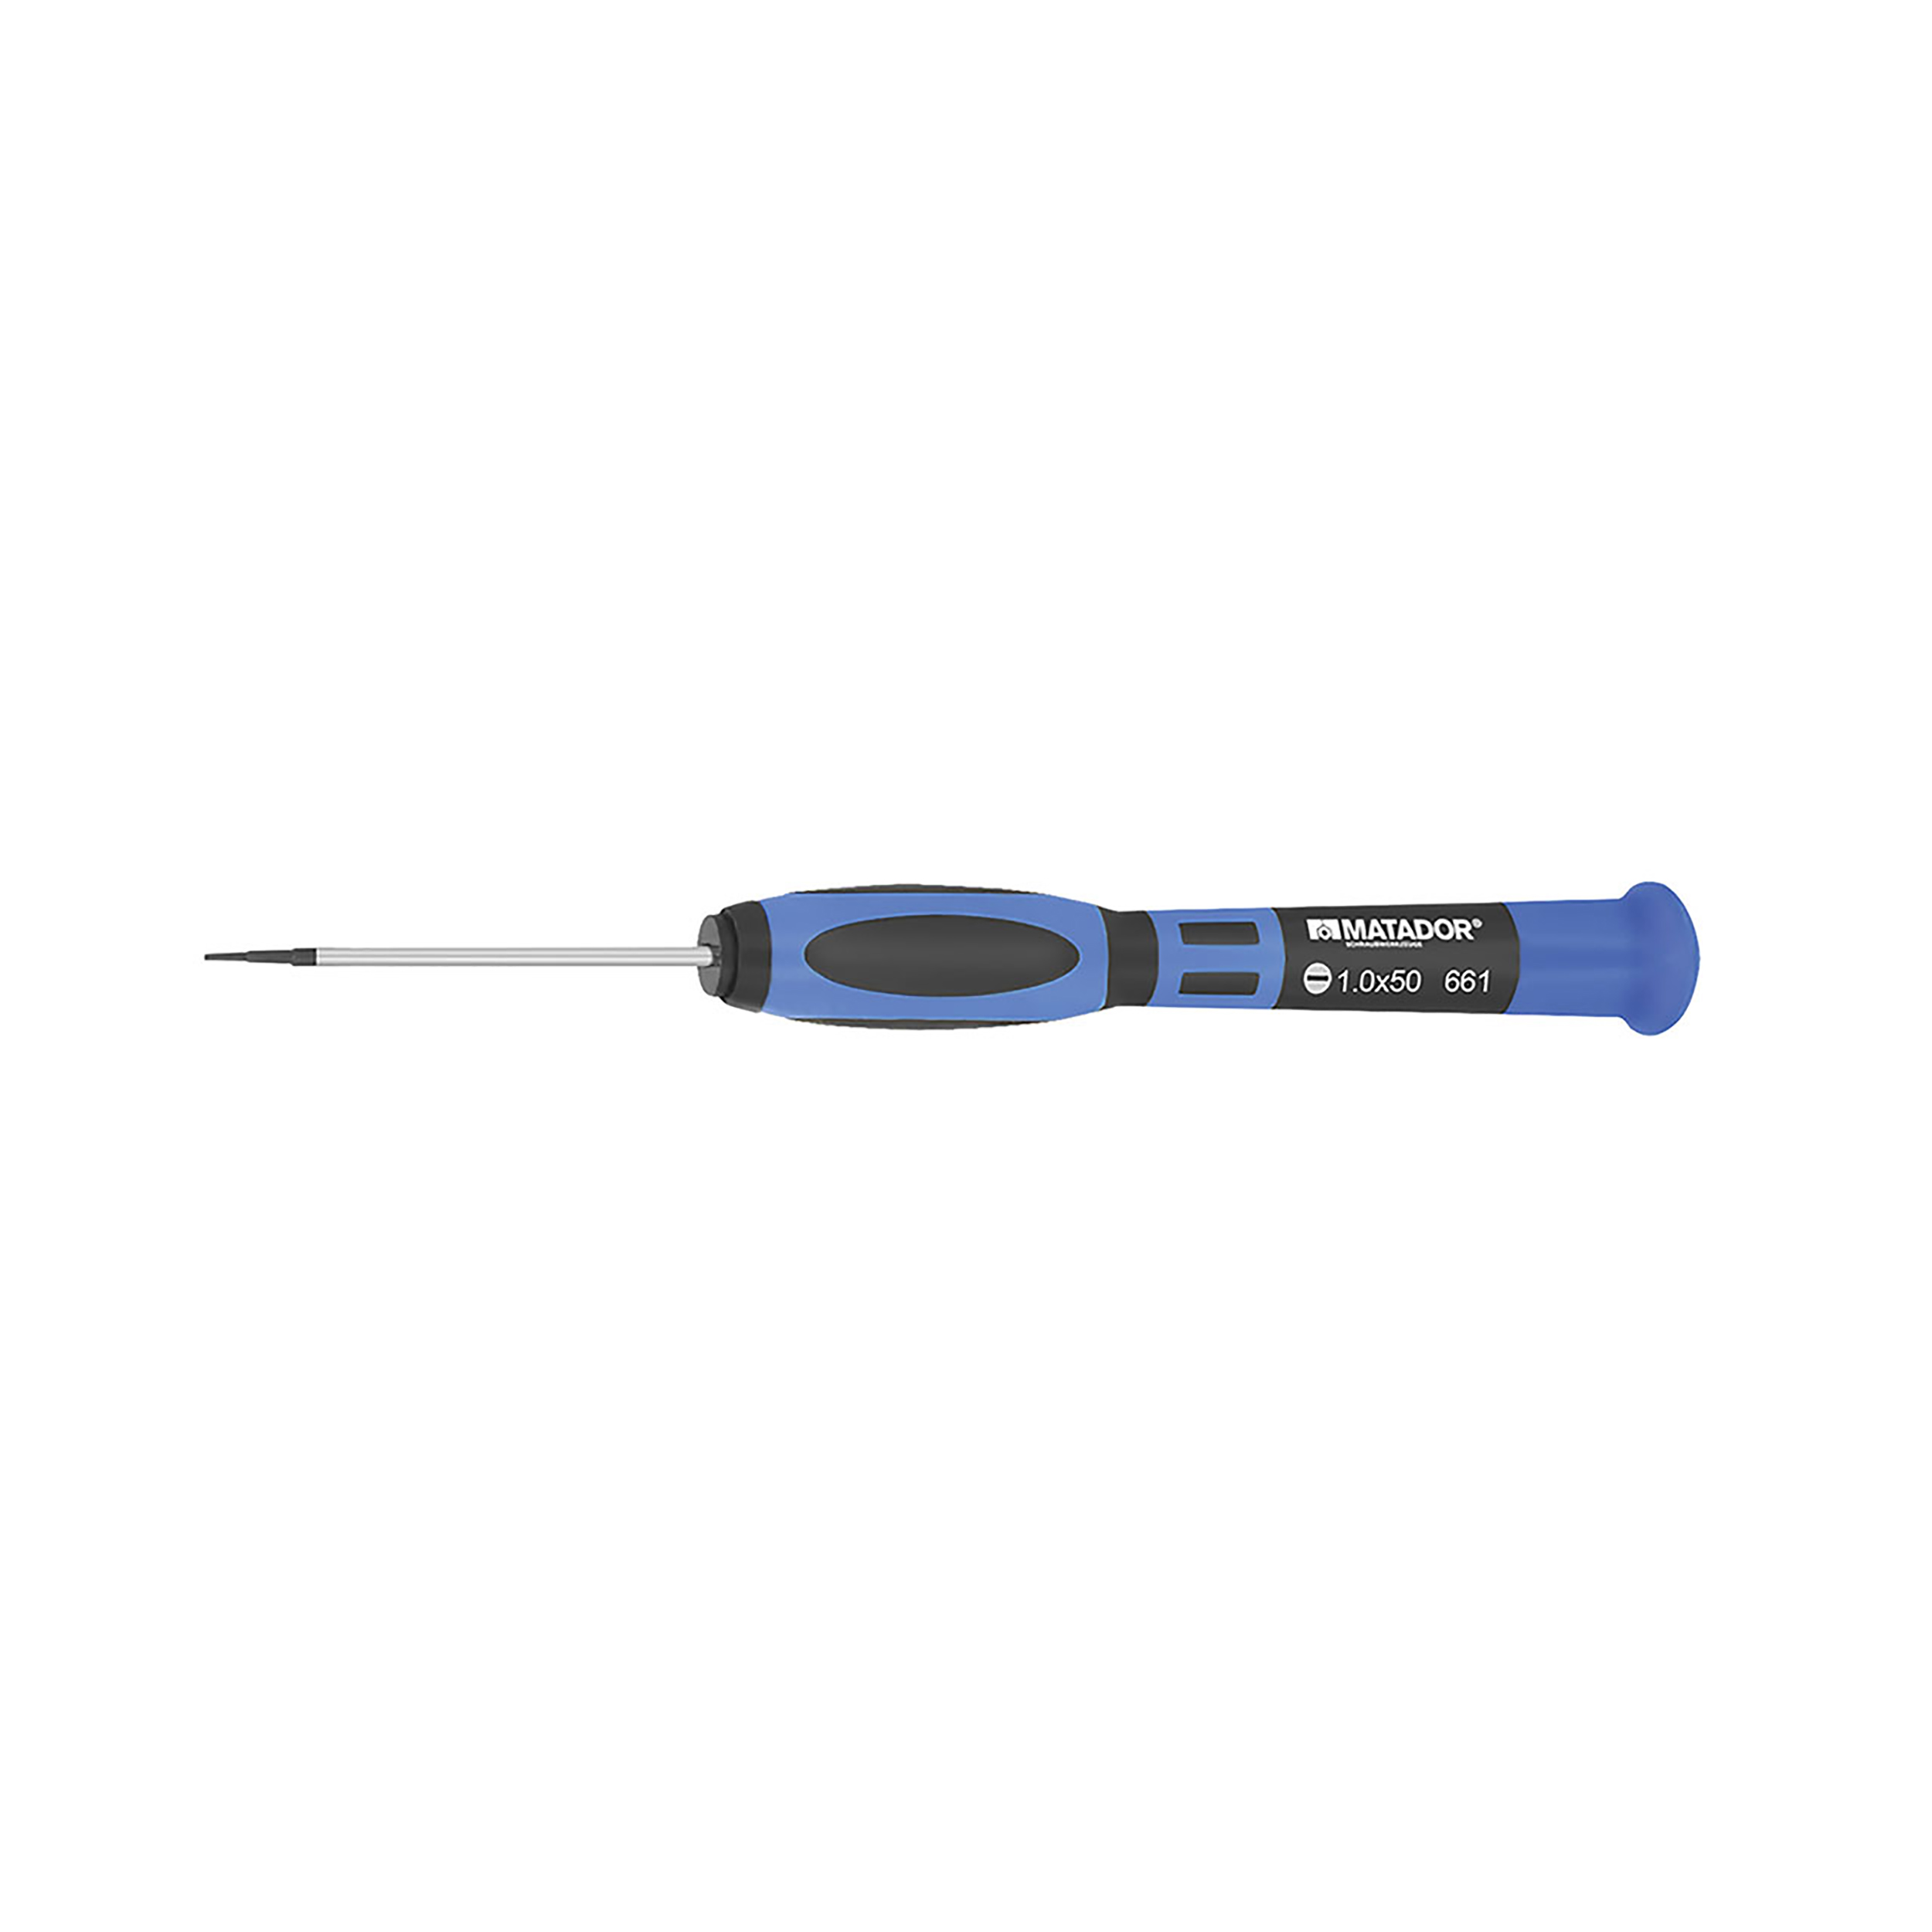 2k-Fine mechanics screwdriver, 0.5x3x50 mm, MATADOR Item No.: 06610530